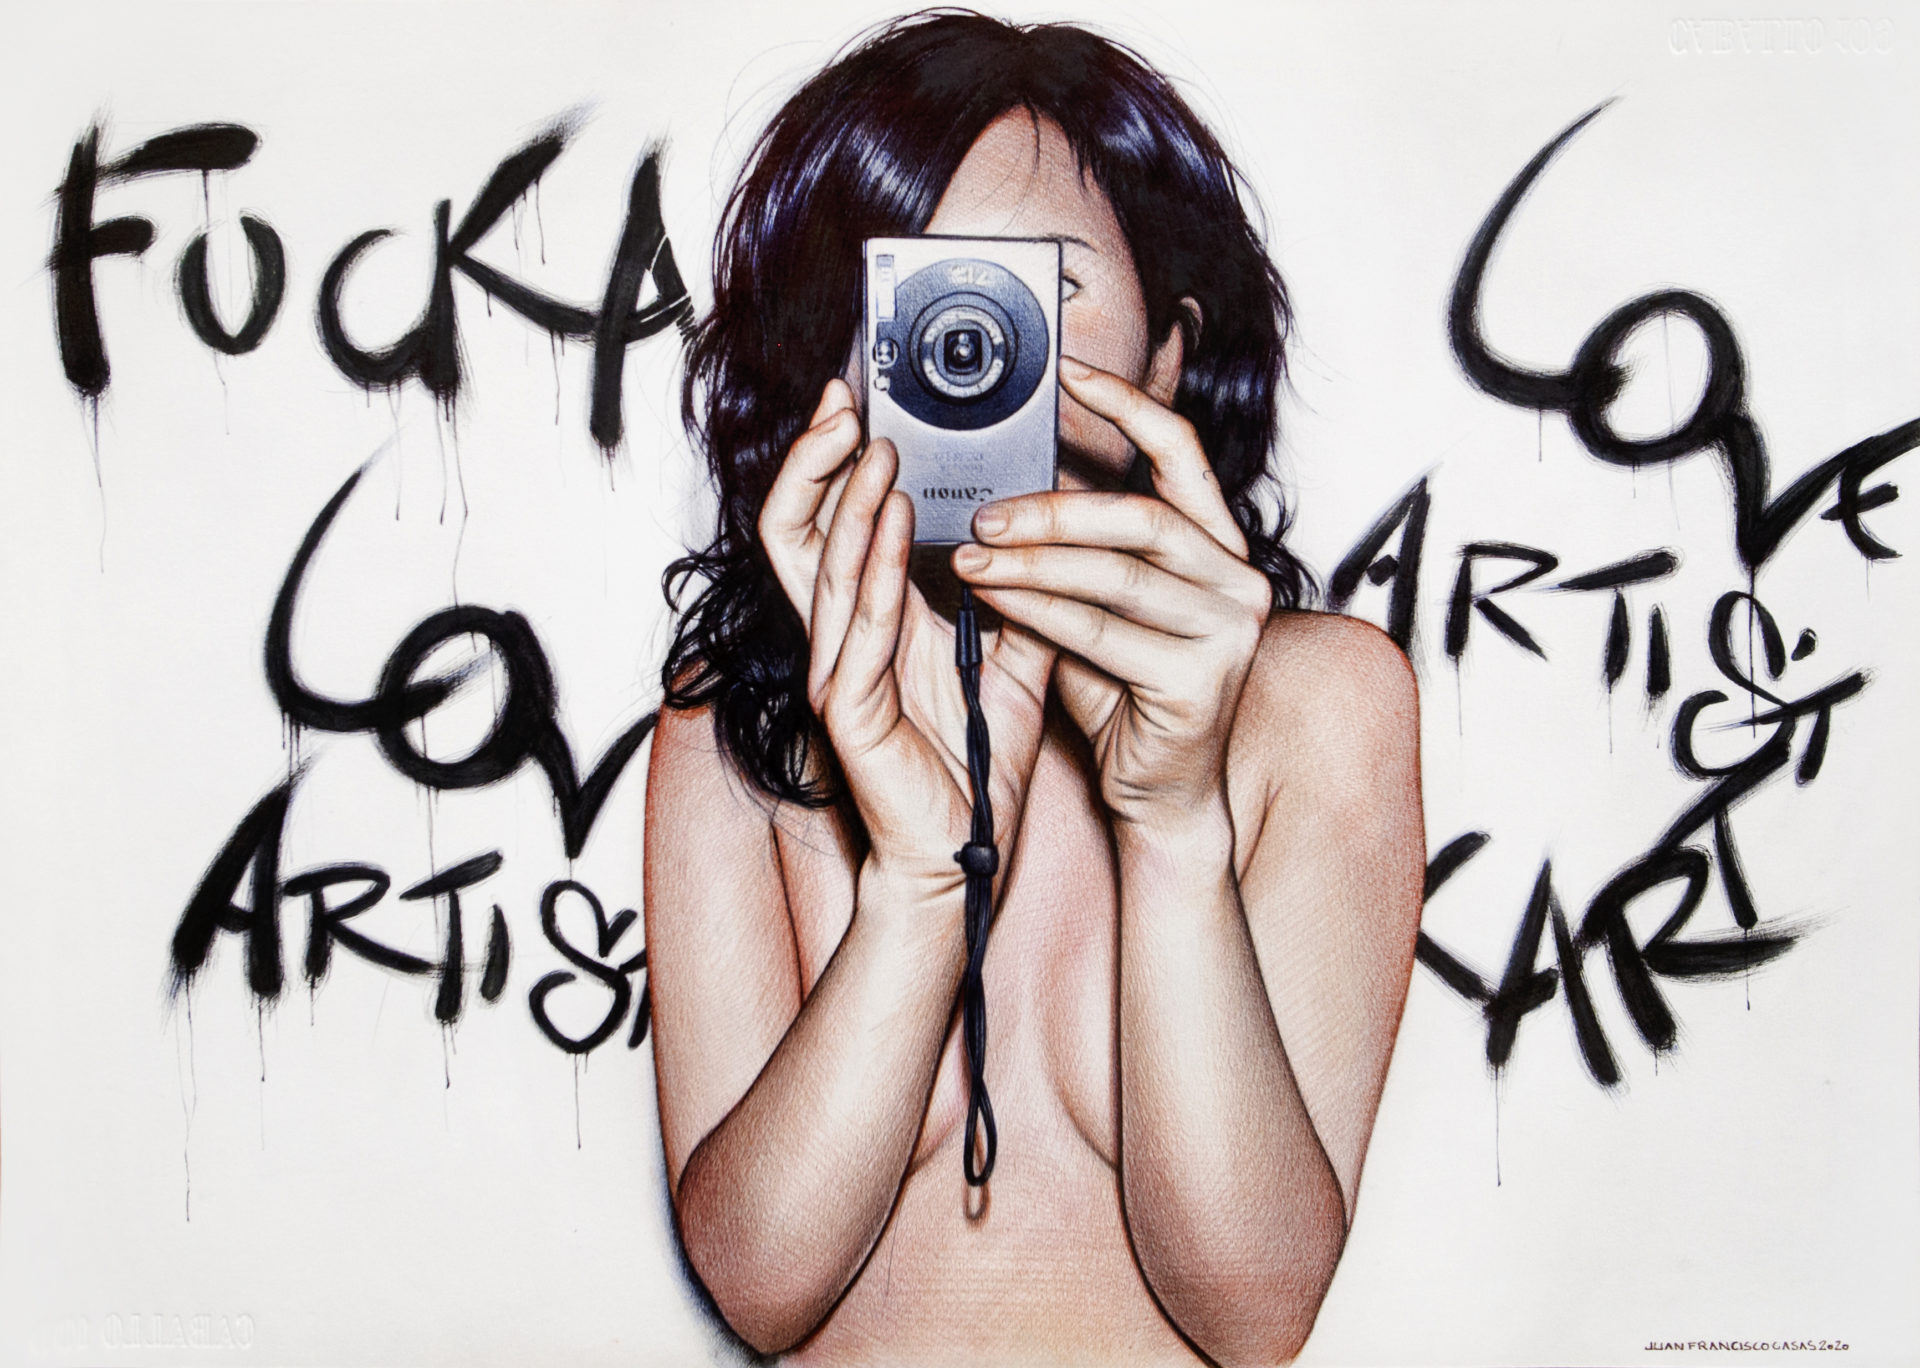 Fuck art love artists, stylo bic couleurs sur papier, 30 x 42 cm, 2020